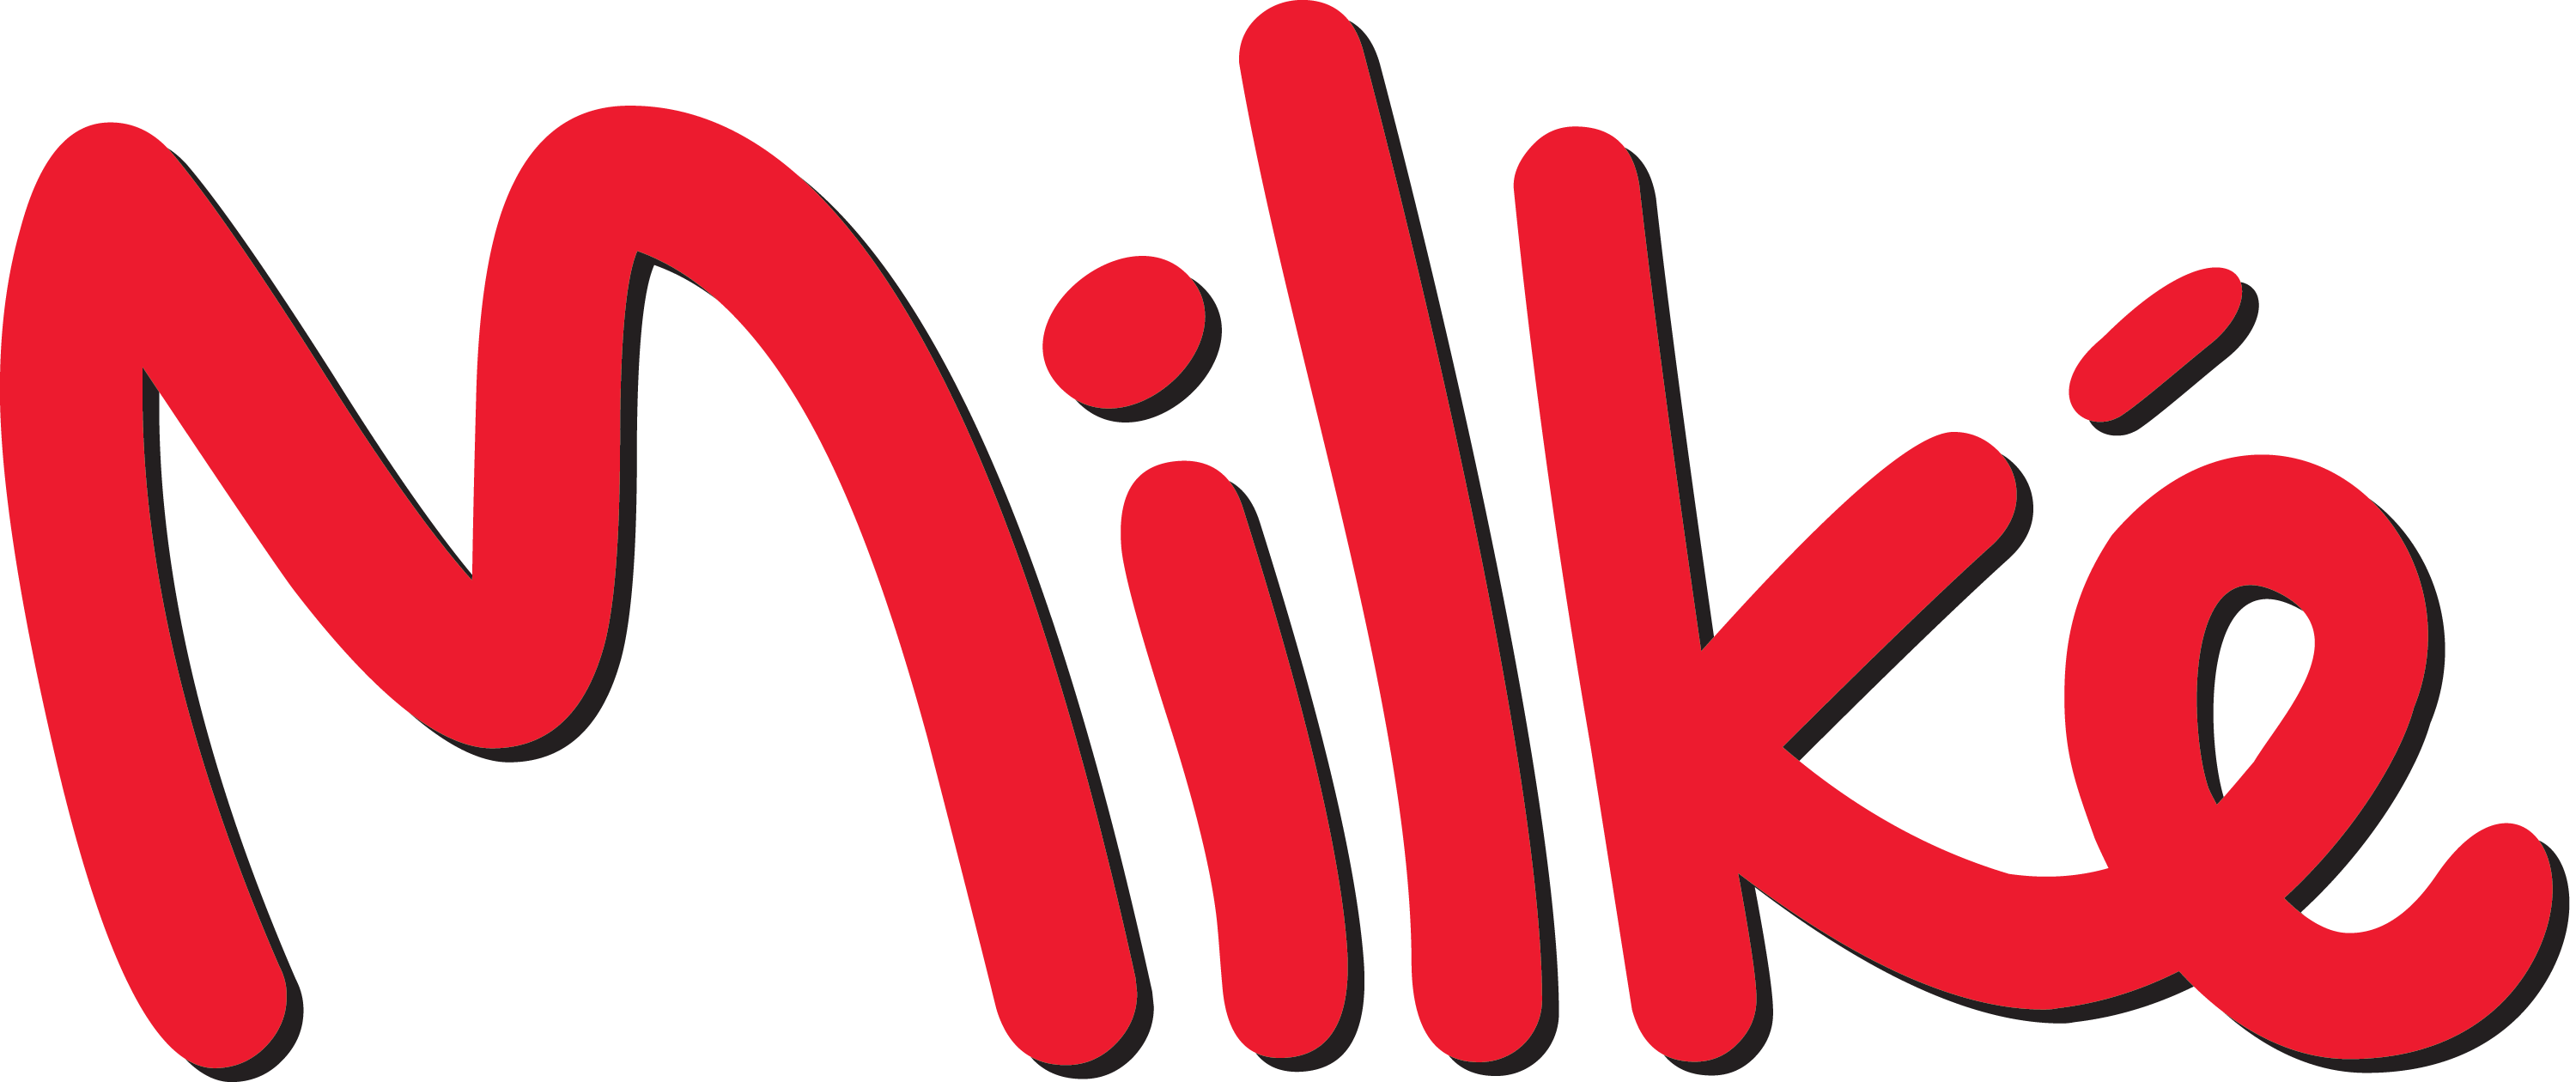 Milke